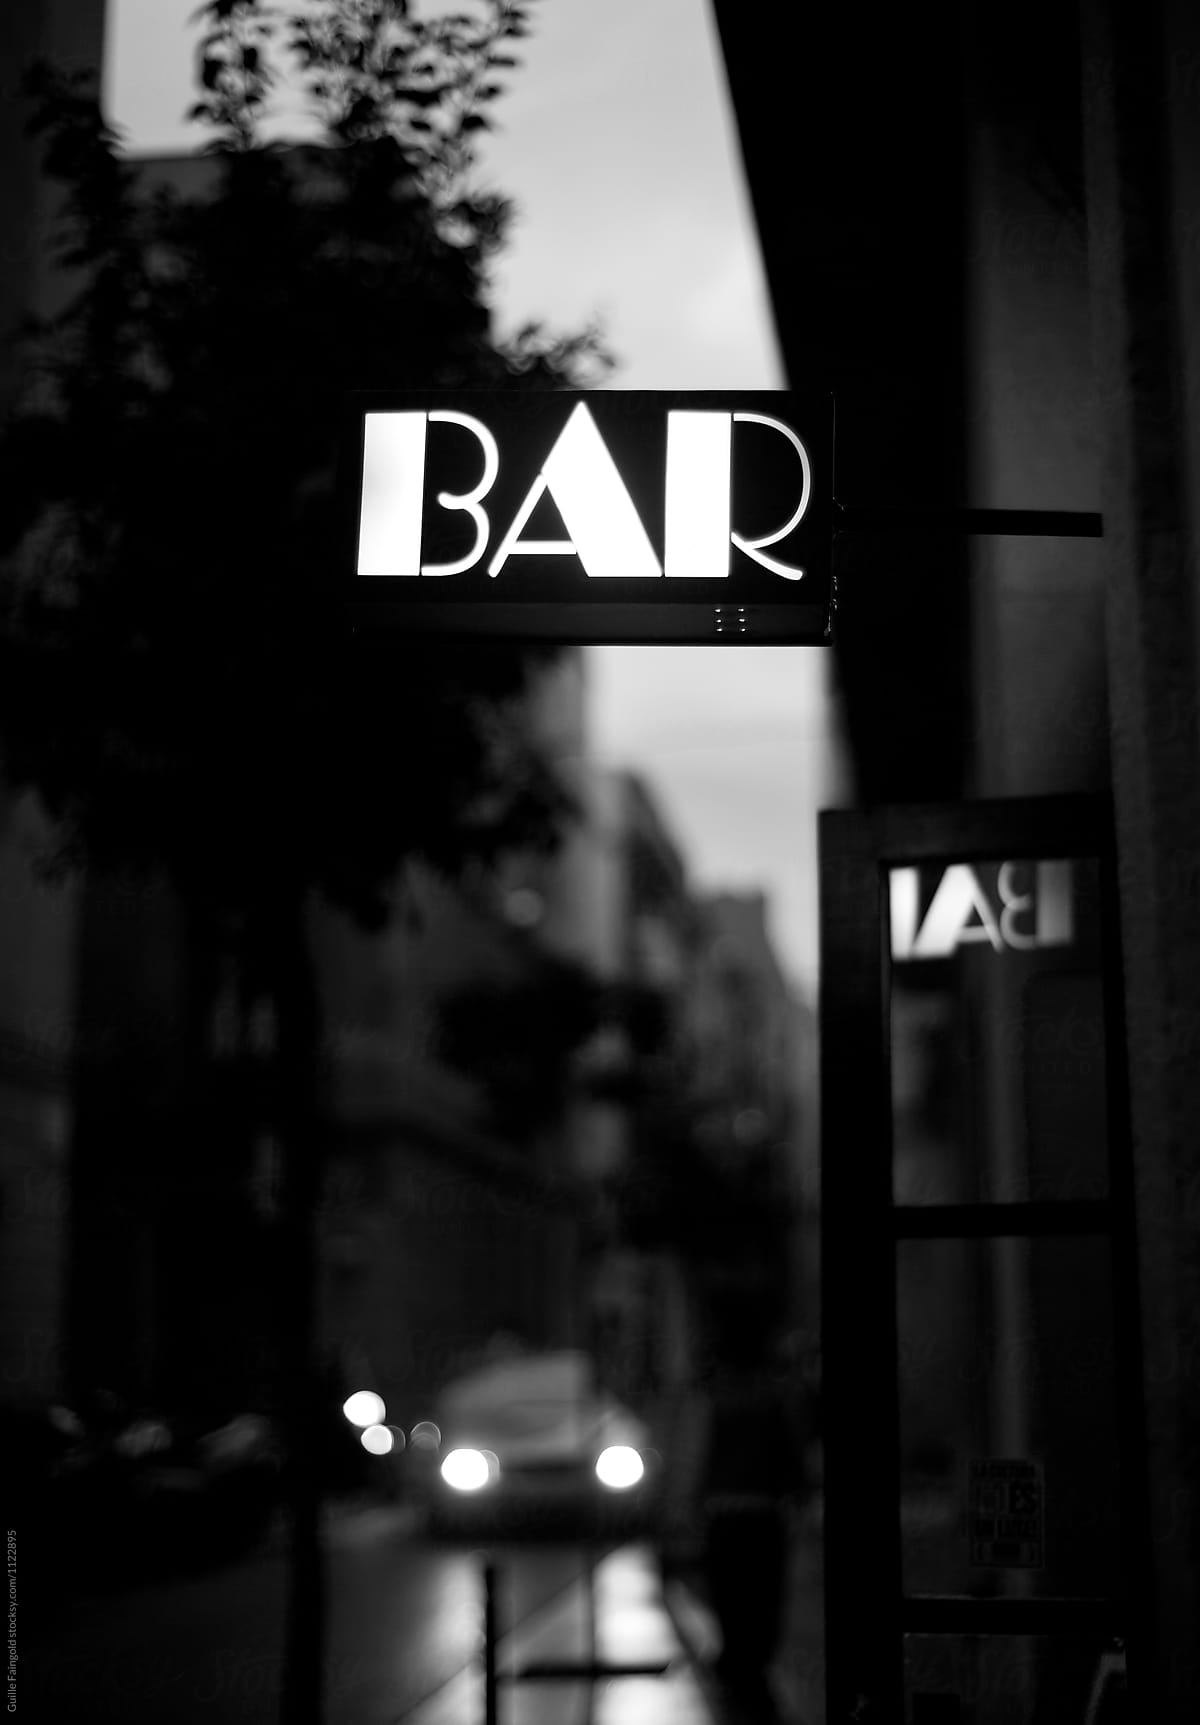 Bar signboard illuminated in the street